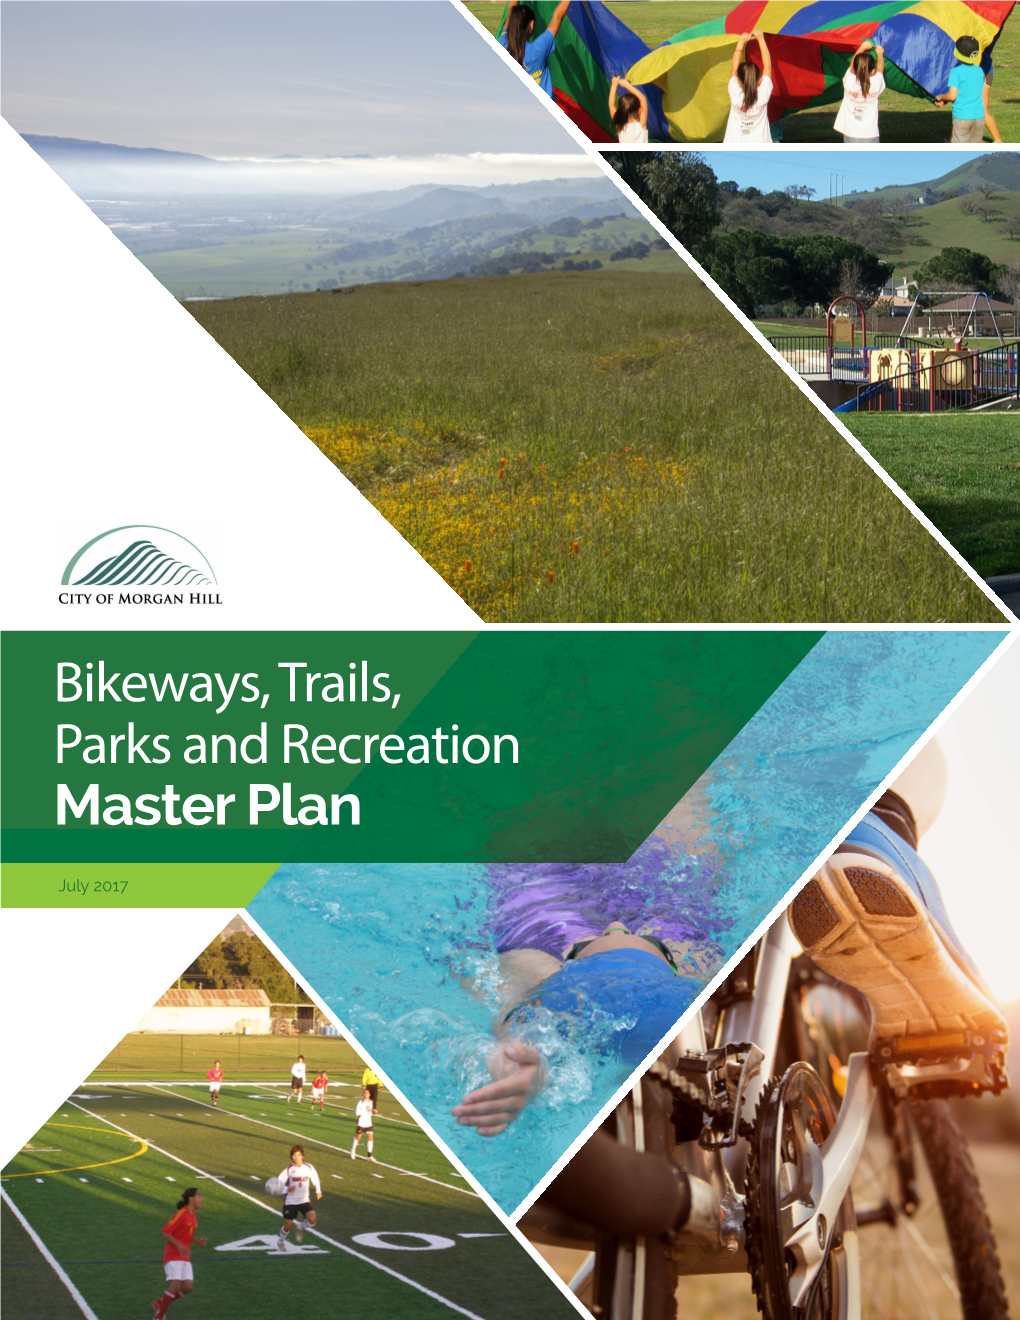 Bikeways, Trails, Parks and Recreation Master Plan